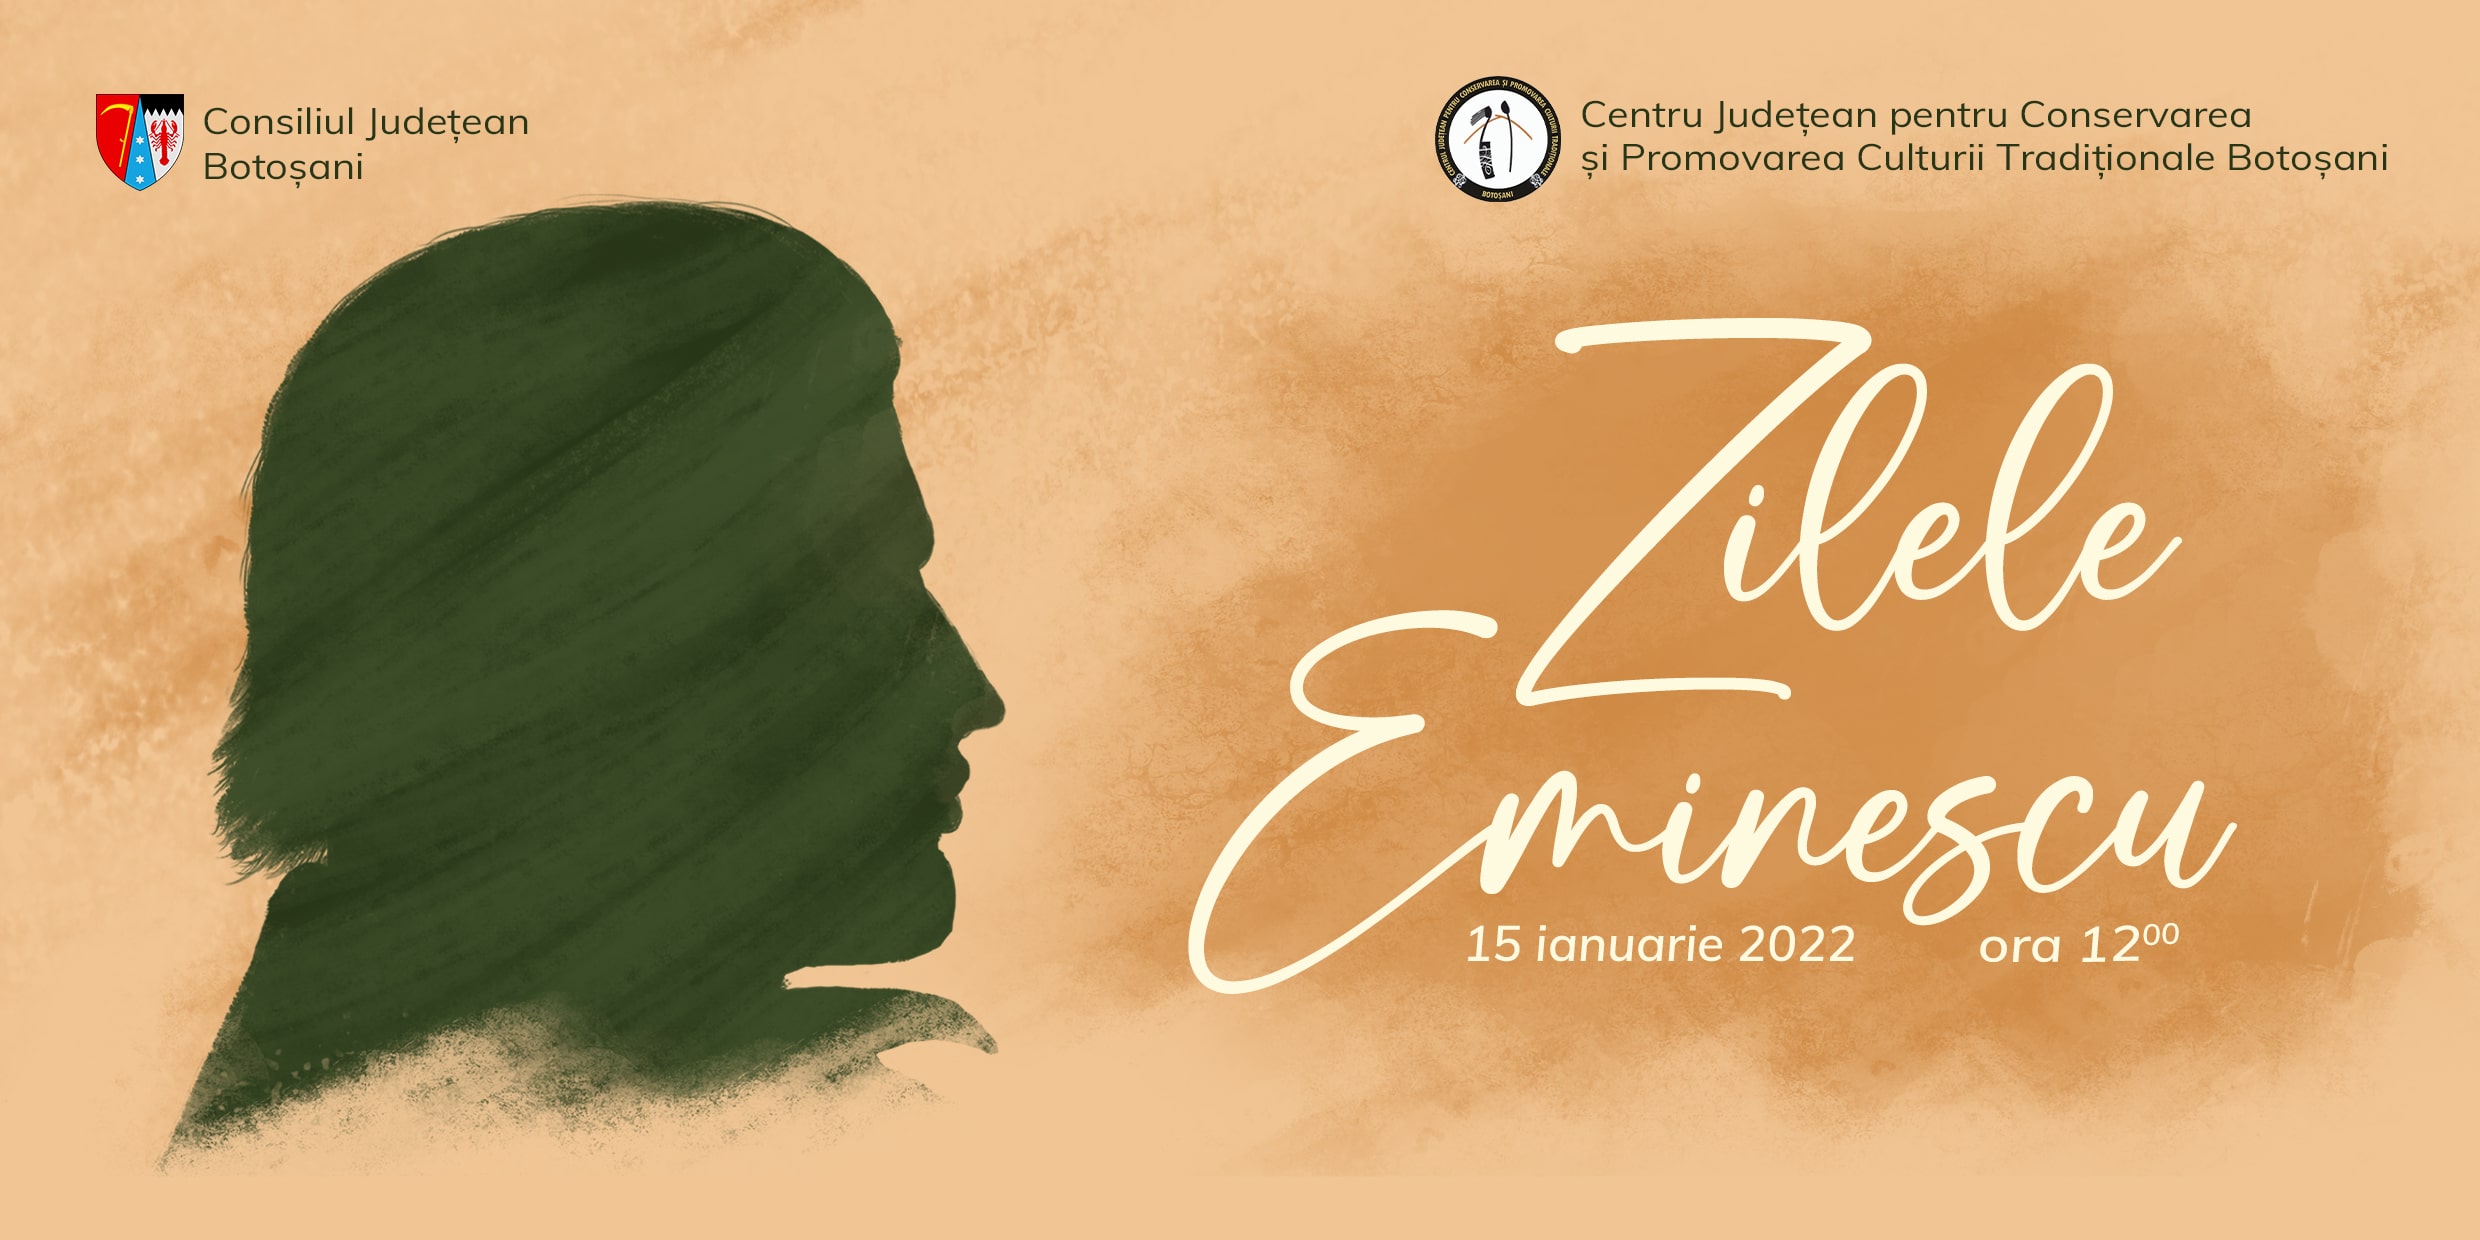 Comunicat de presă final – Zilele Eminescu, 15 ianuarie 2022